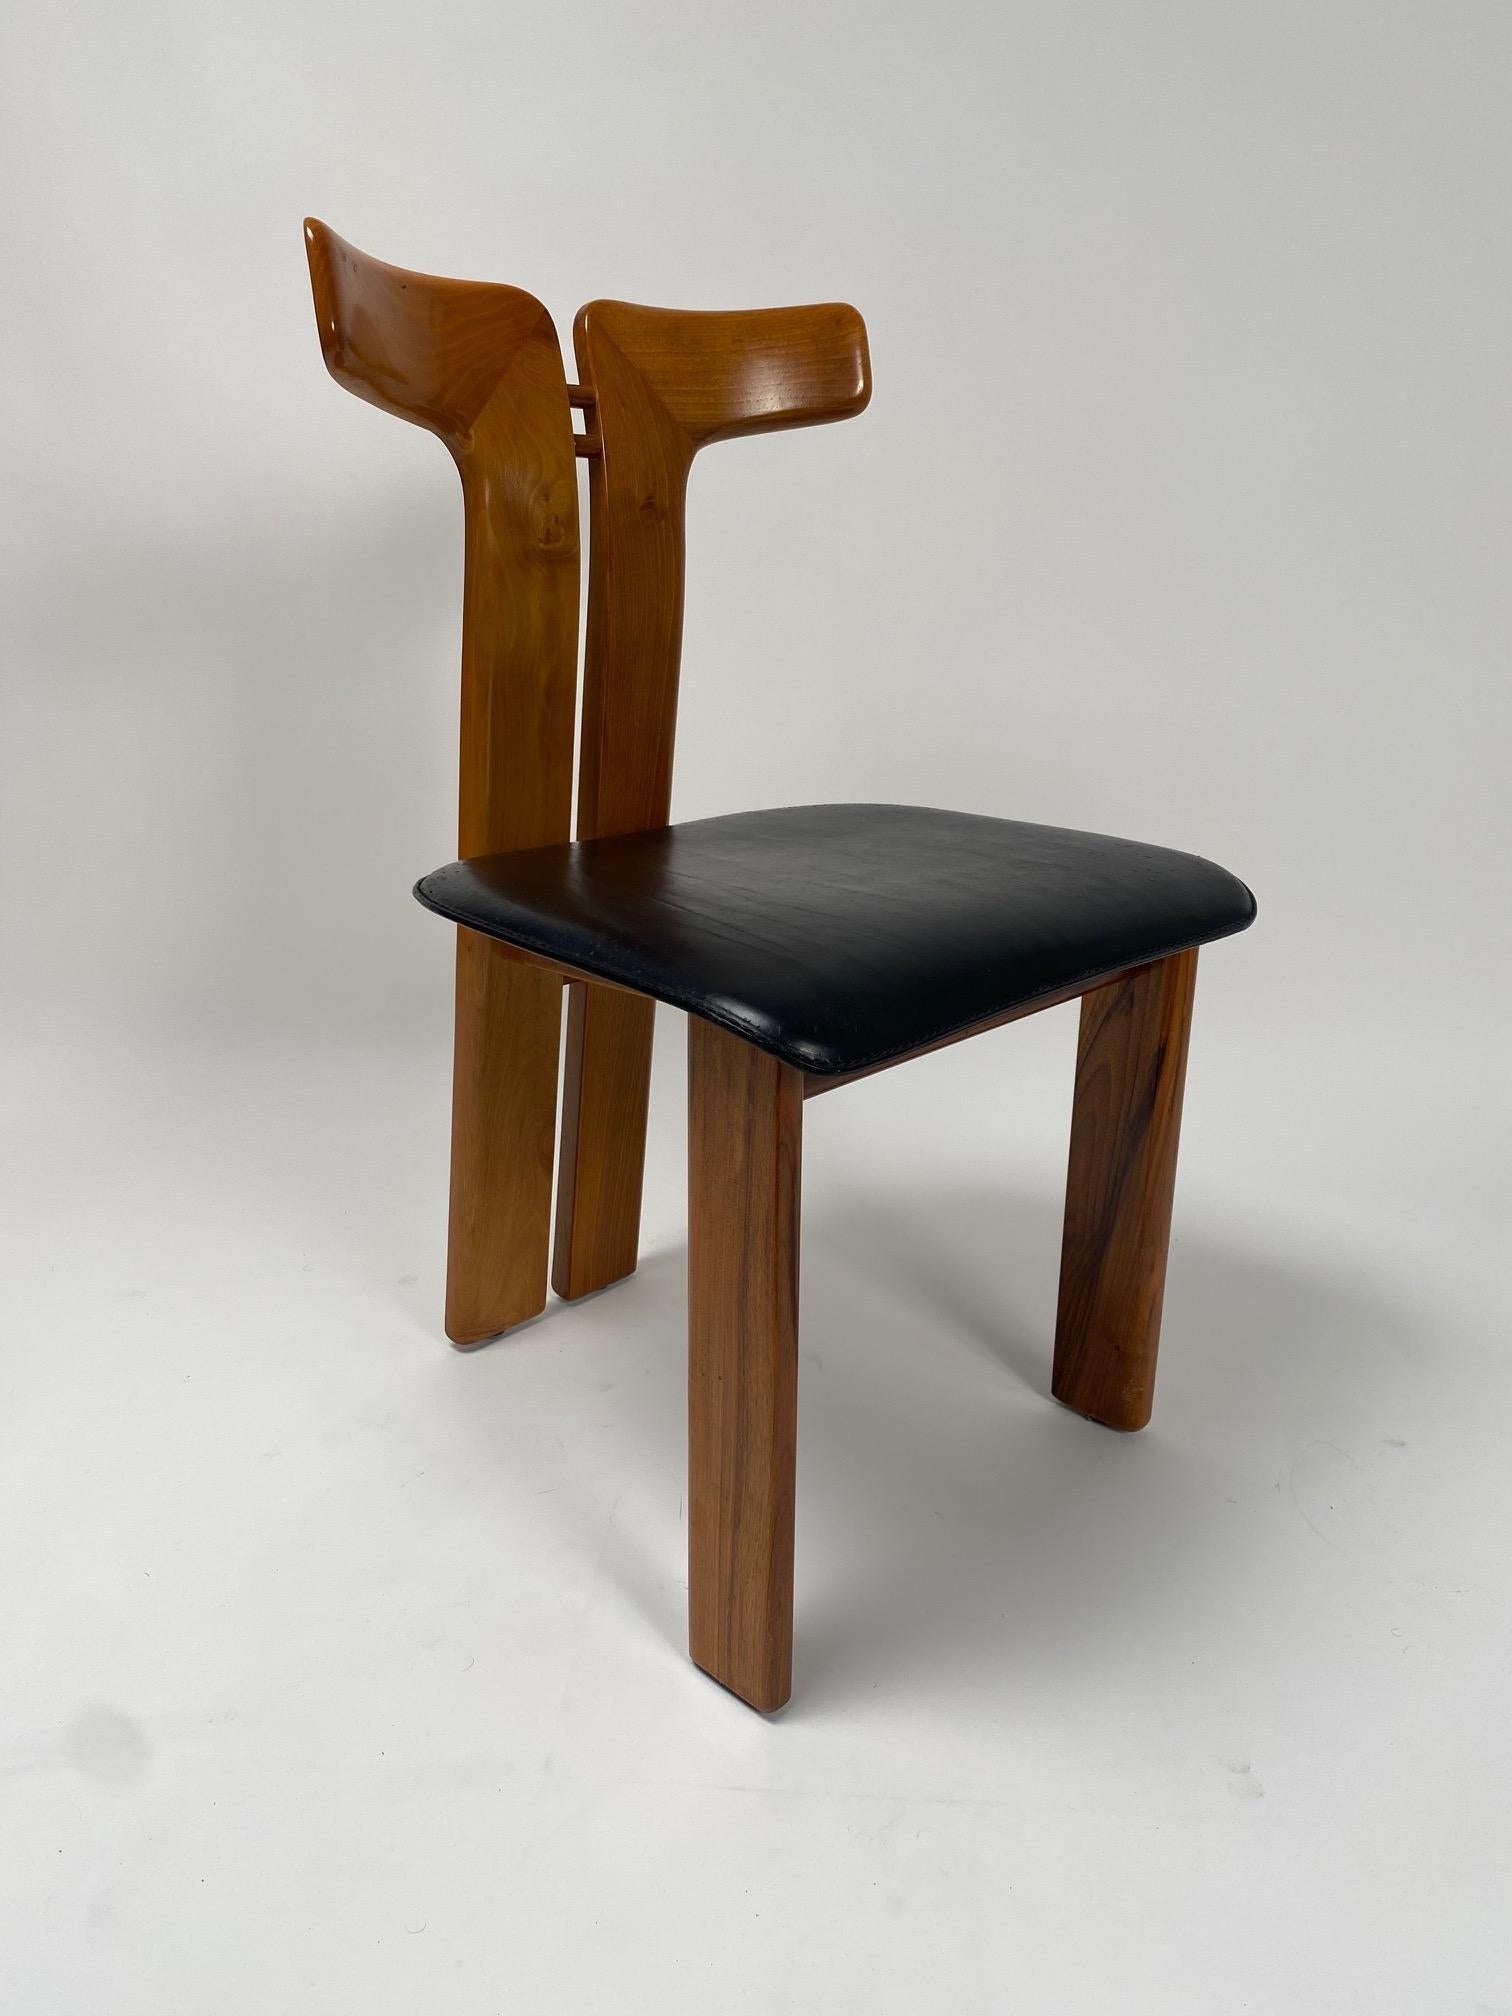 Pierre Cardin (1922-2020), Satz von sechs Esszimmerstühlen aus Nussbaum und Leder, Italien, 1970er Jahre.

Vier seltene Stühle, die der berühmte französische Designer Pierre Cardin in den 70er Jahren für eine italienische Firma entworfen hat. Es